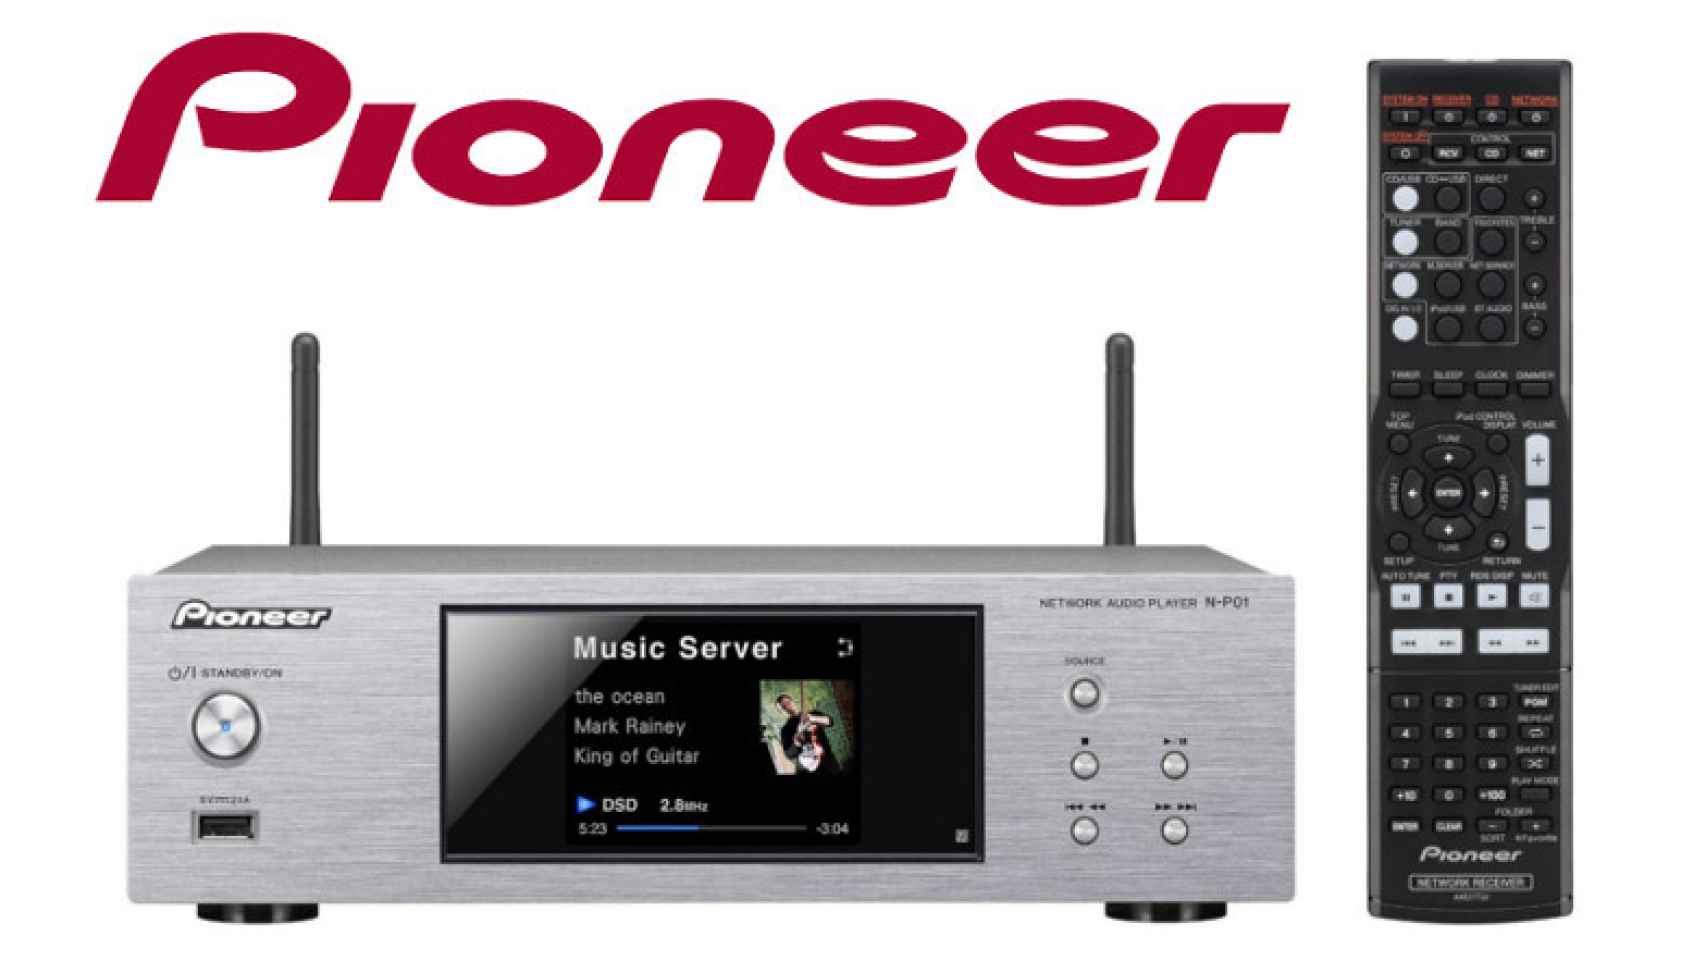 ¡90 euros de descuento! Reproductor de audio en red Pioneer N-P01-S sólo 308 euros.